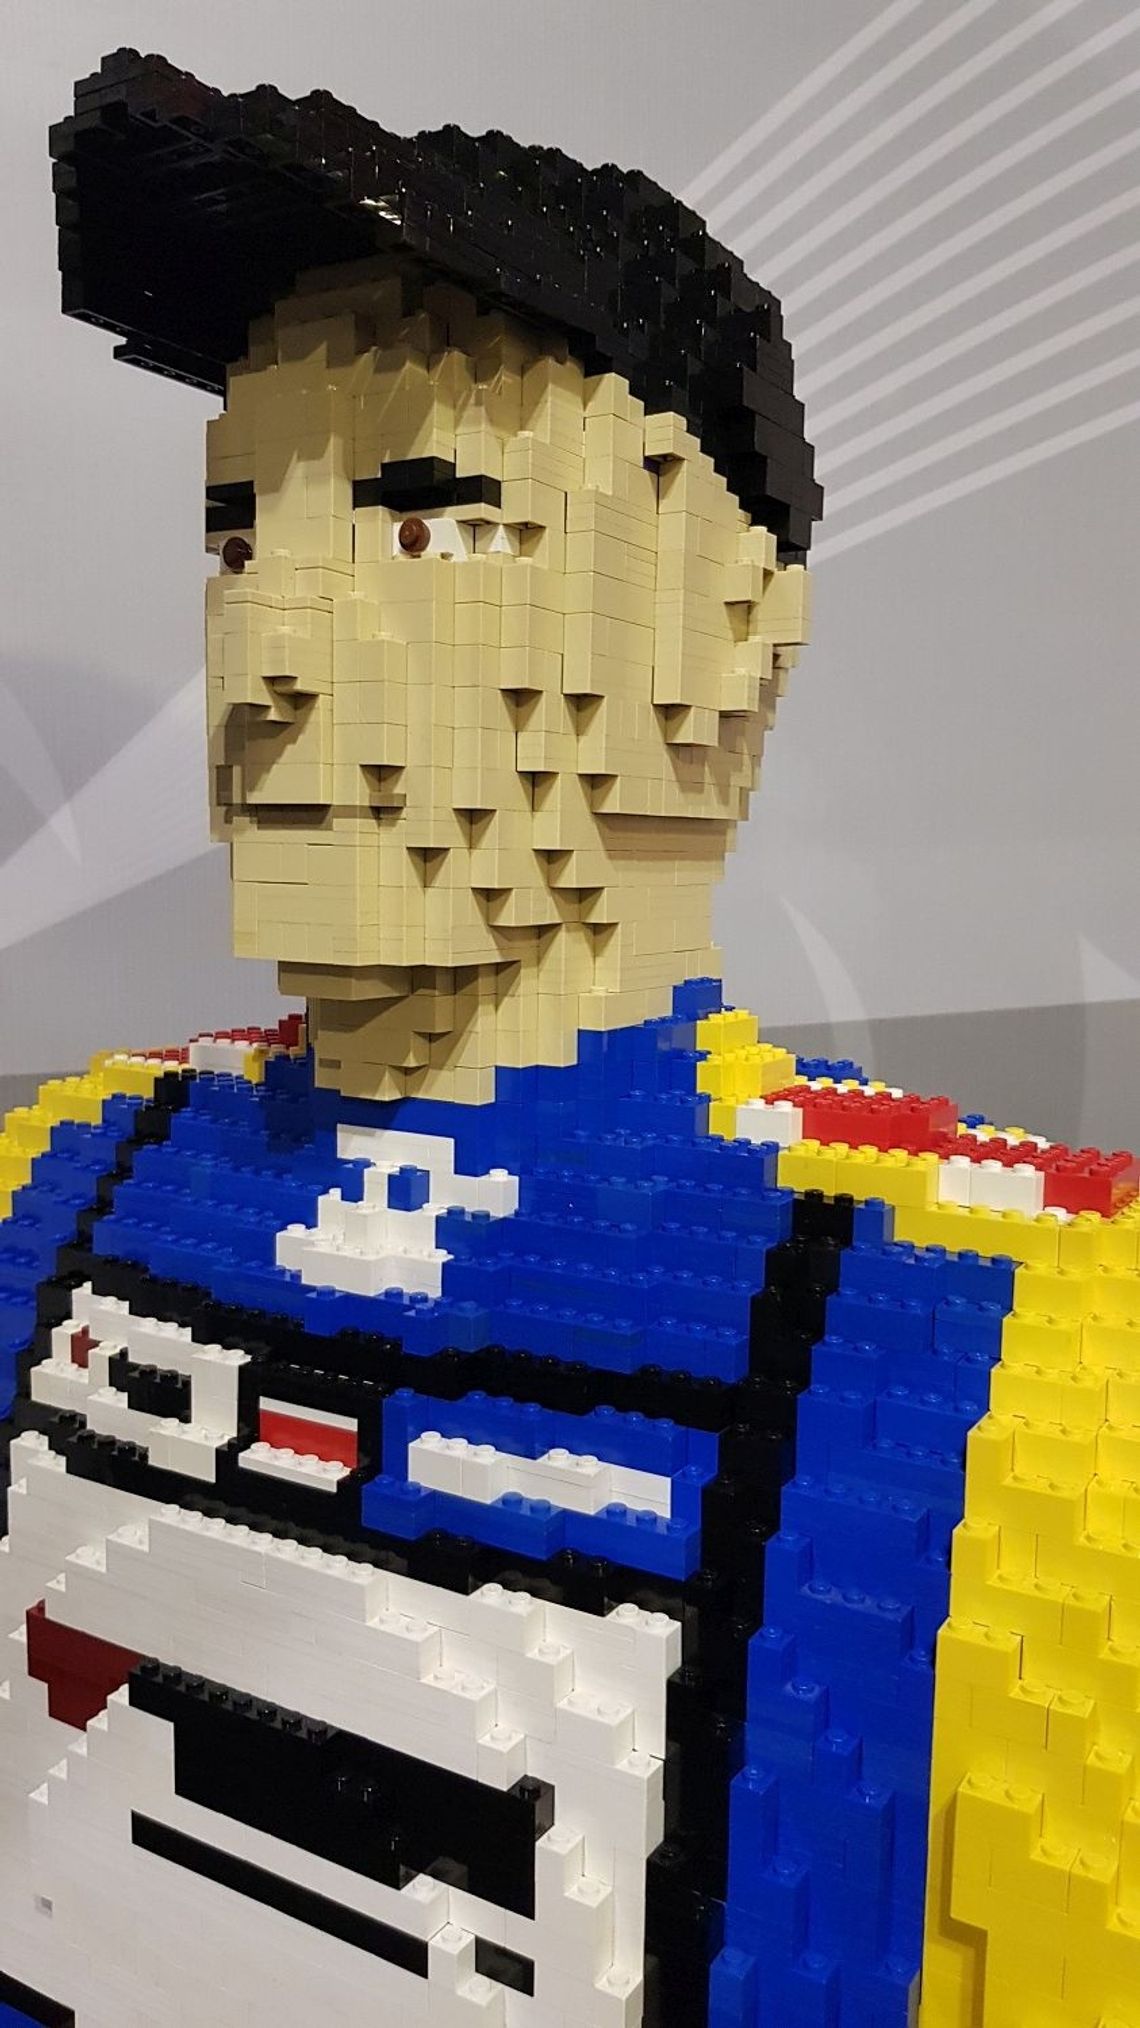 W Bydgoszczy stanie figura Tomasza Golloba stworzona z klocków Lego